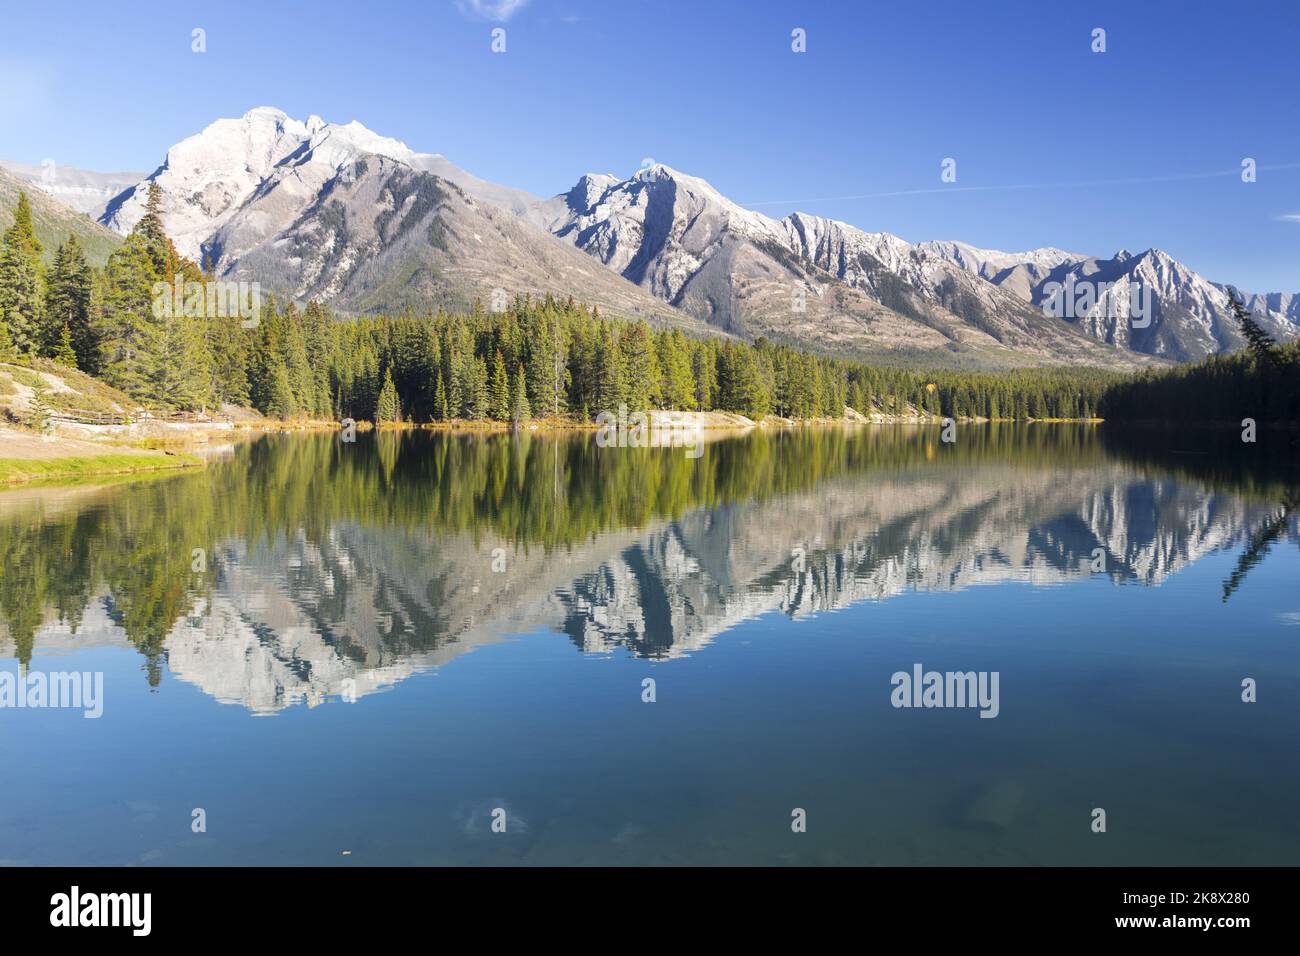 Los árboles de la cadena montañosa y del bosque verde se reflejan en el agua tranquila del lago. Paisaje otoñal panorámico de Blue Sky Parque Nacional Banff, Montañas Rocosas canadienses Foto de stock